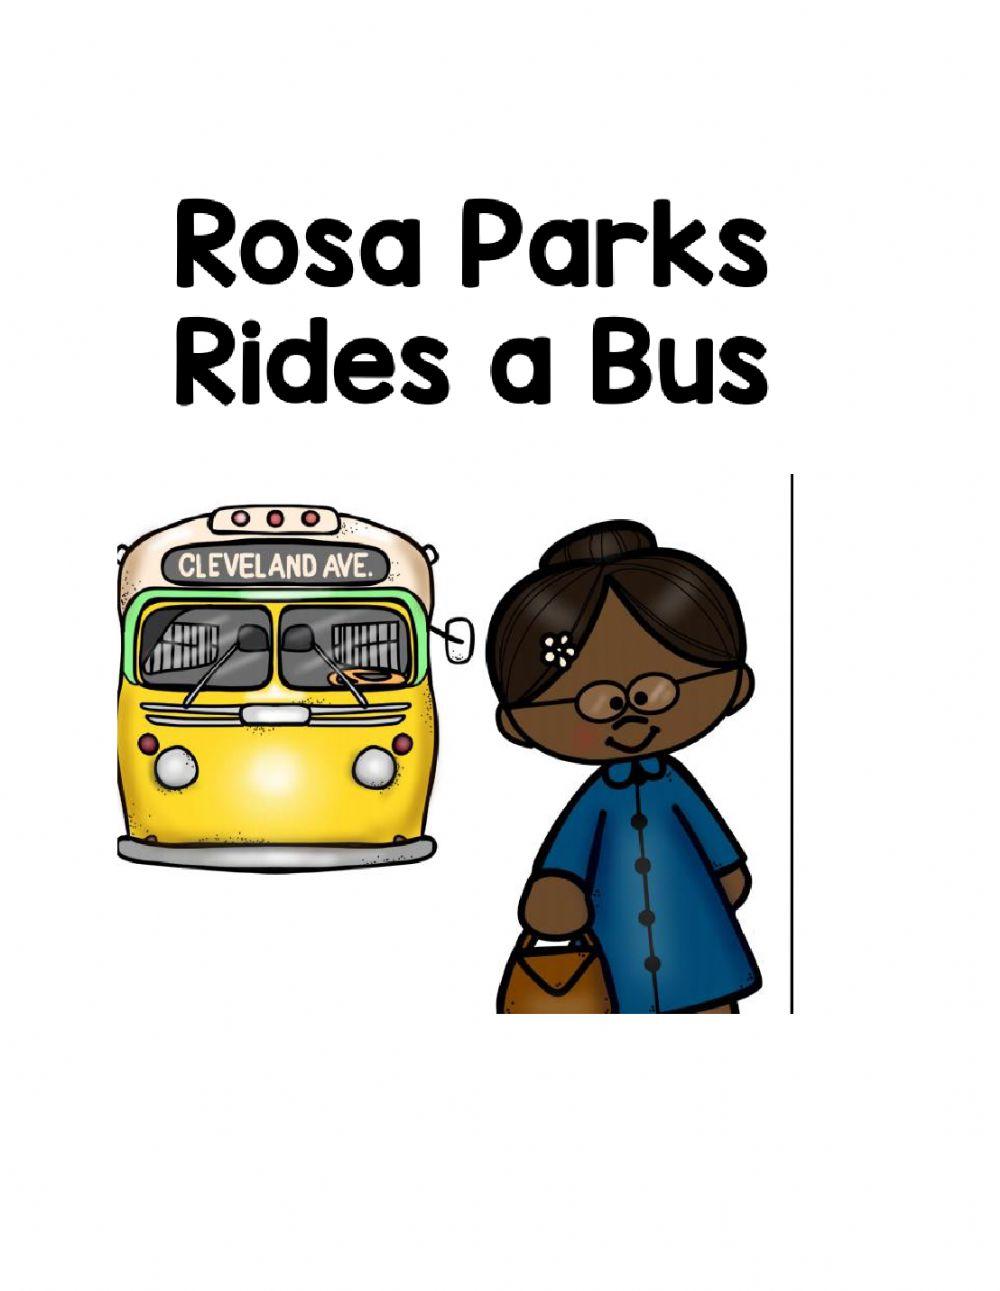 Rosa parks